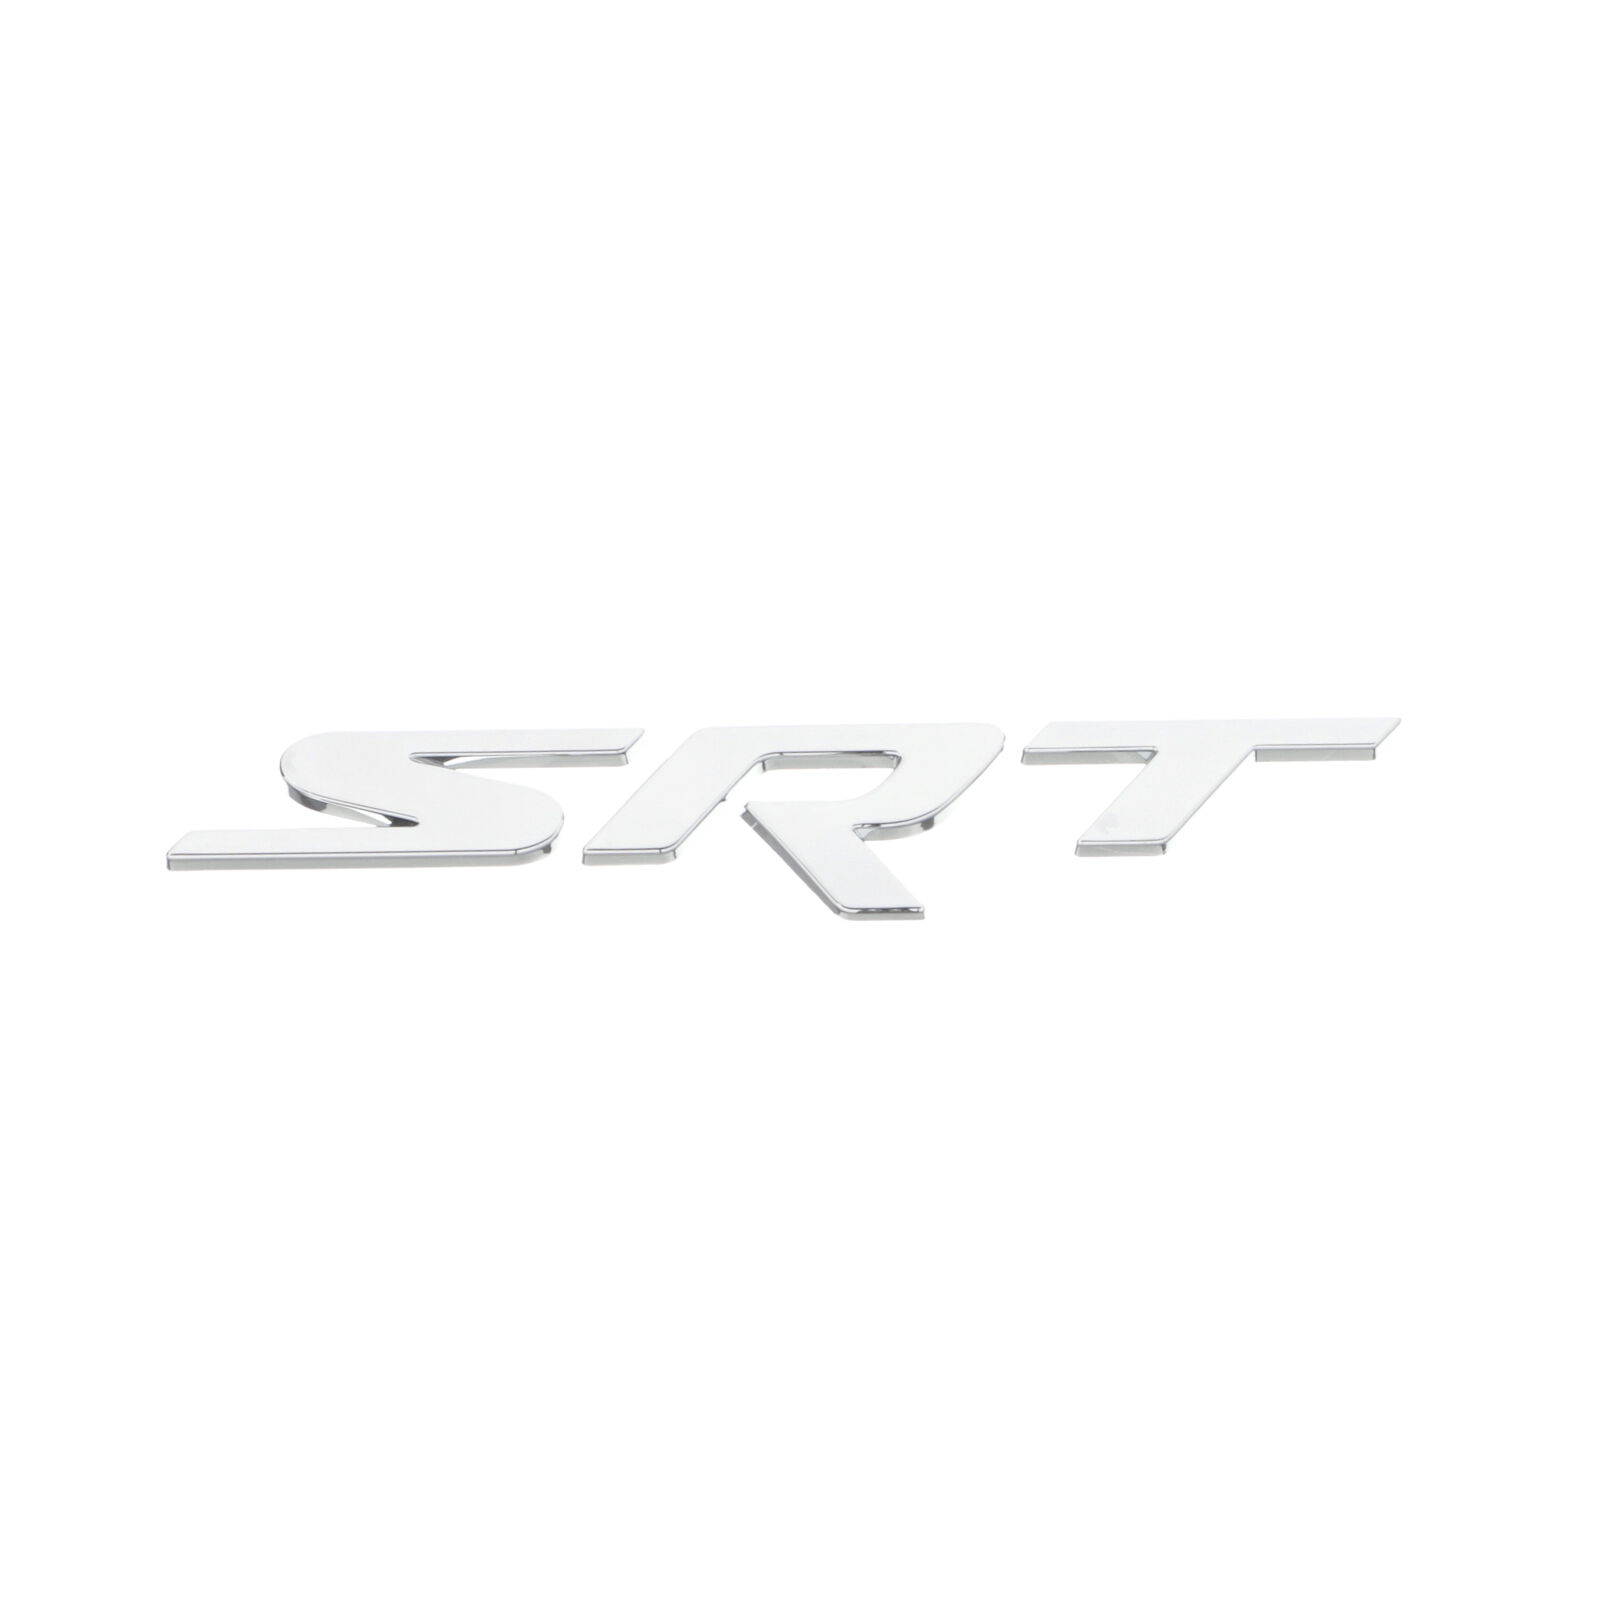 DODGE CHARGER CHALLENGER VIPER 300 SRT SRT8 CHROME EMBLEM NAMEPLATE OEM MOPAR